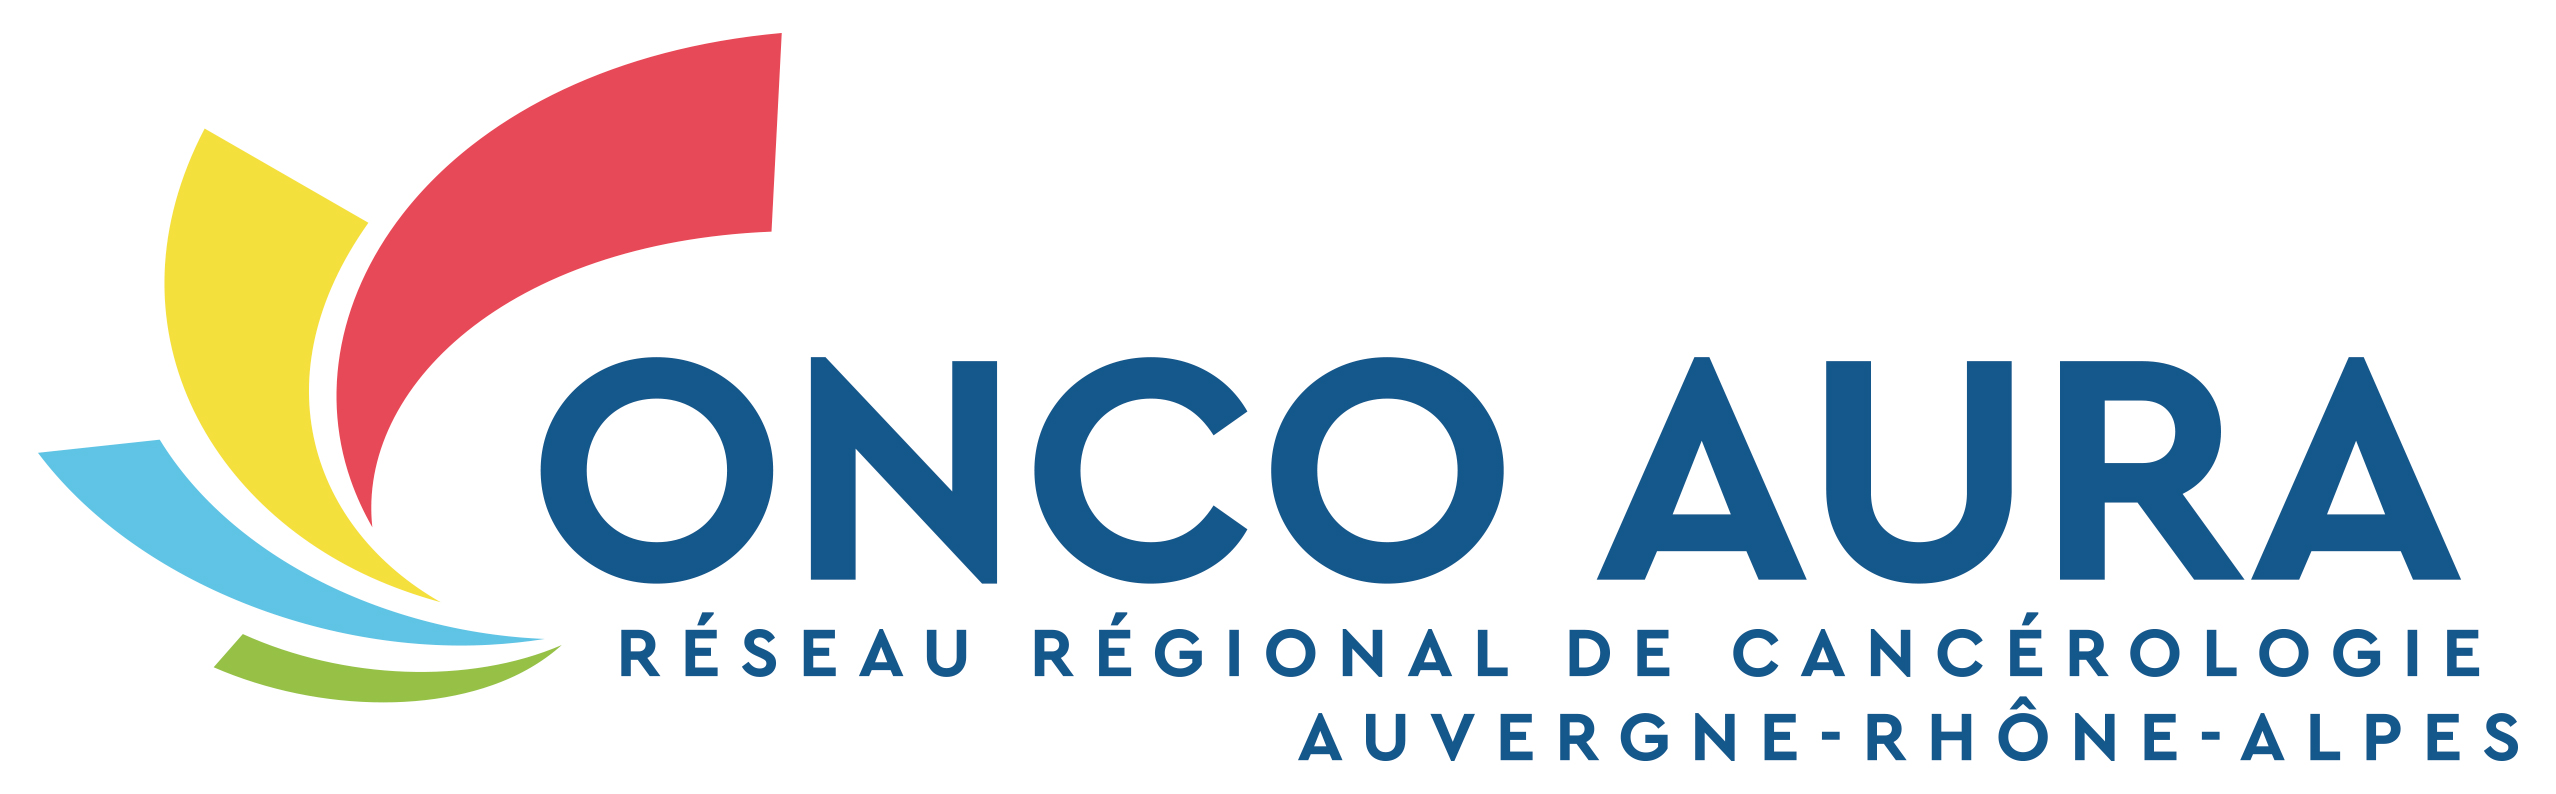 Réseau Régional de Cancérologie Auvergne Rhône-Alpes